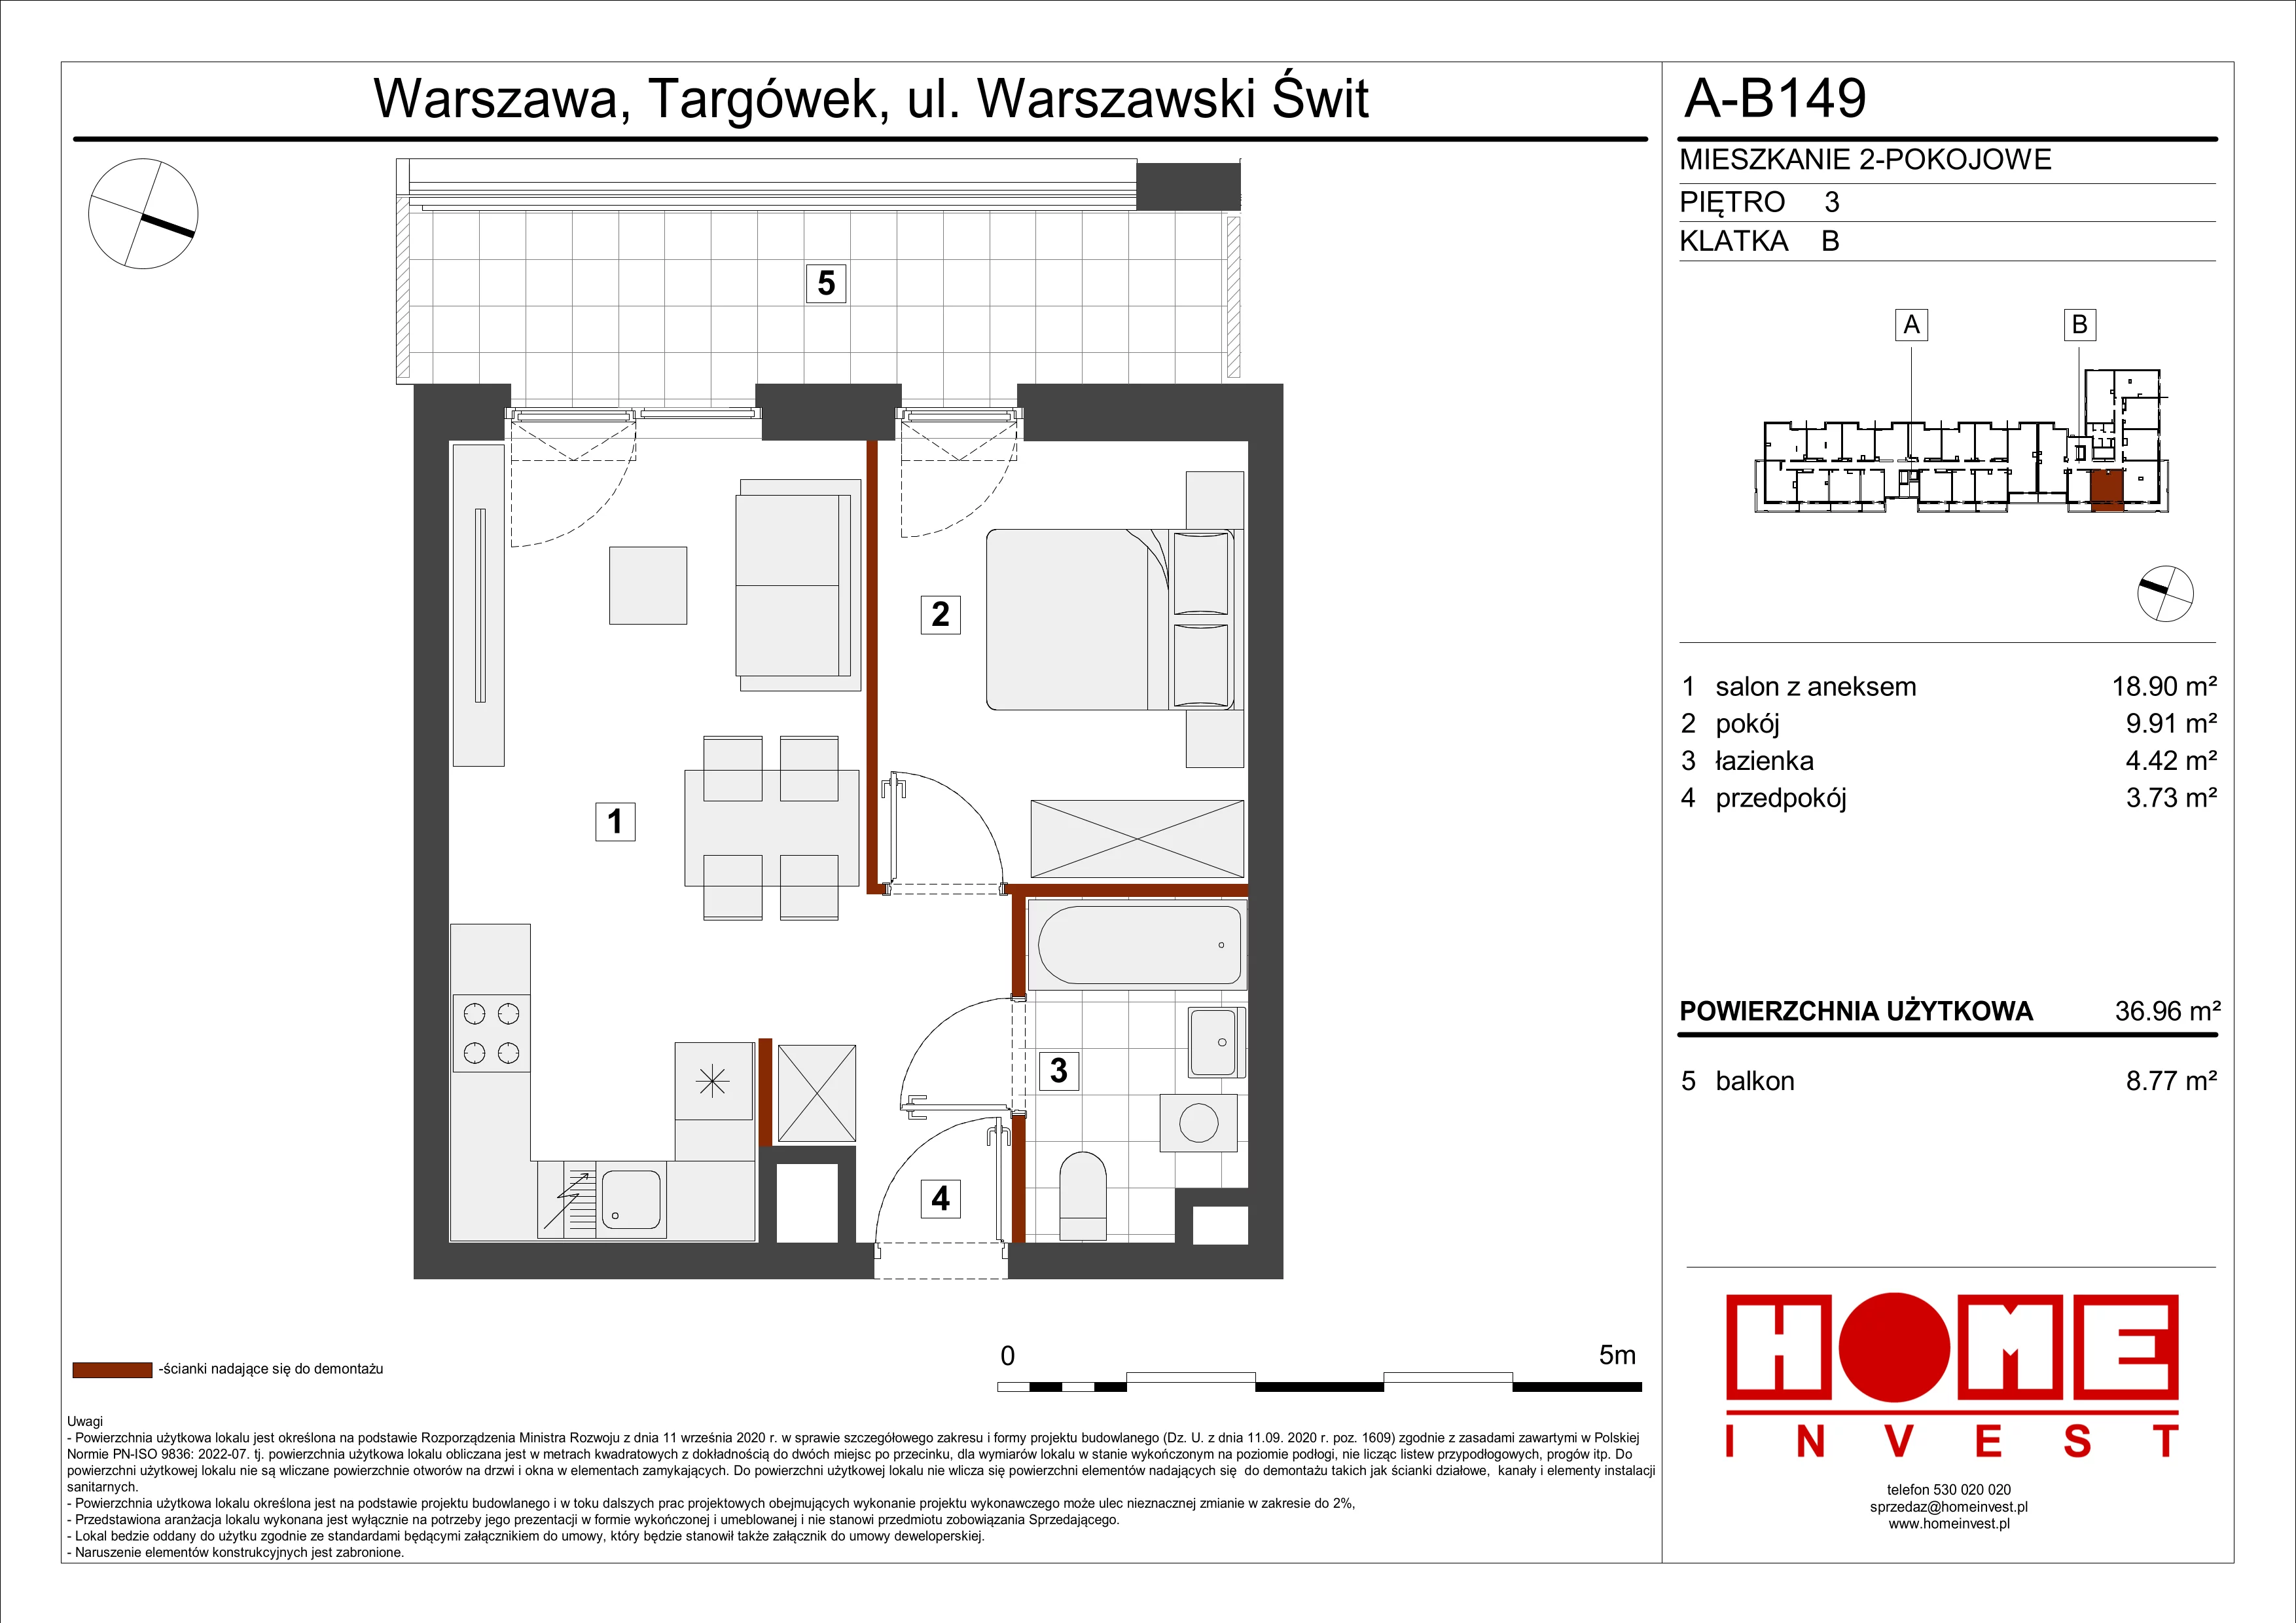 Mieszkanie 36,96 m², piętro 3, oferta nr A-B149, Warszawski Świt, Warszawa, Targówek, Bródno, ul. Warszawski Świt 5